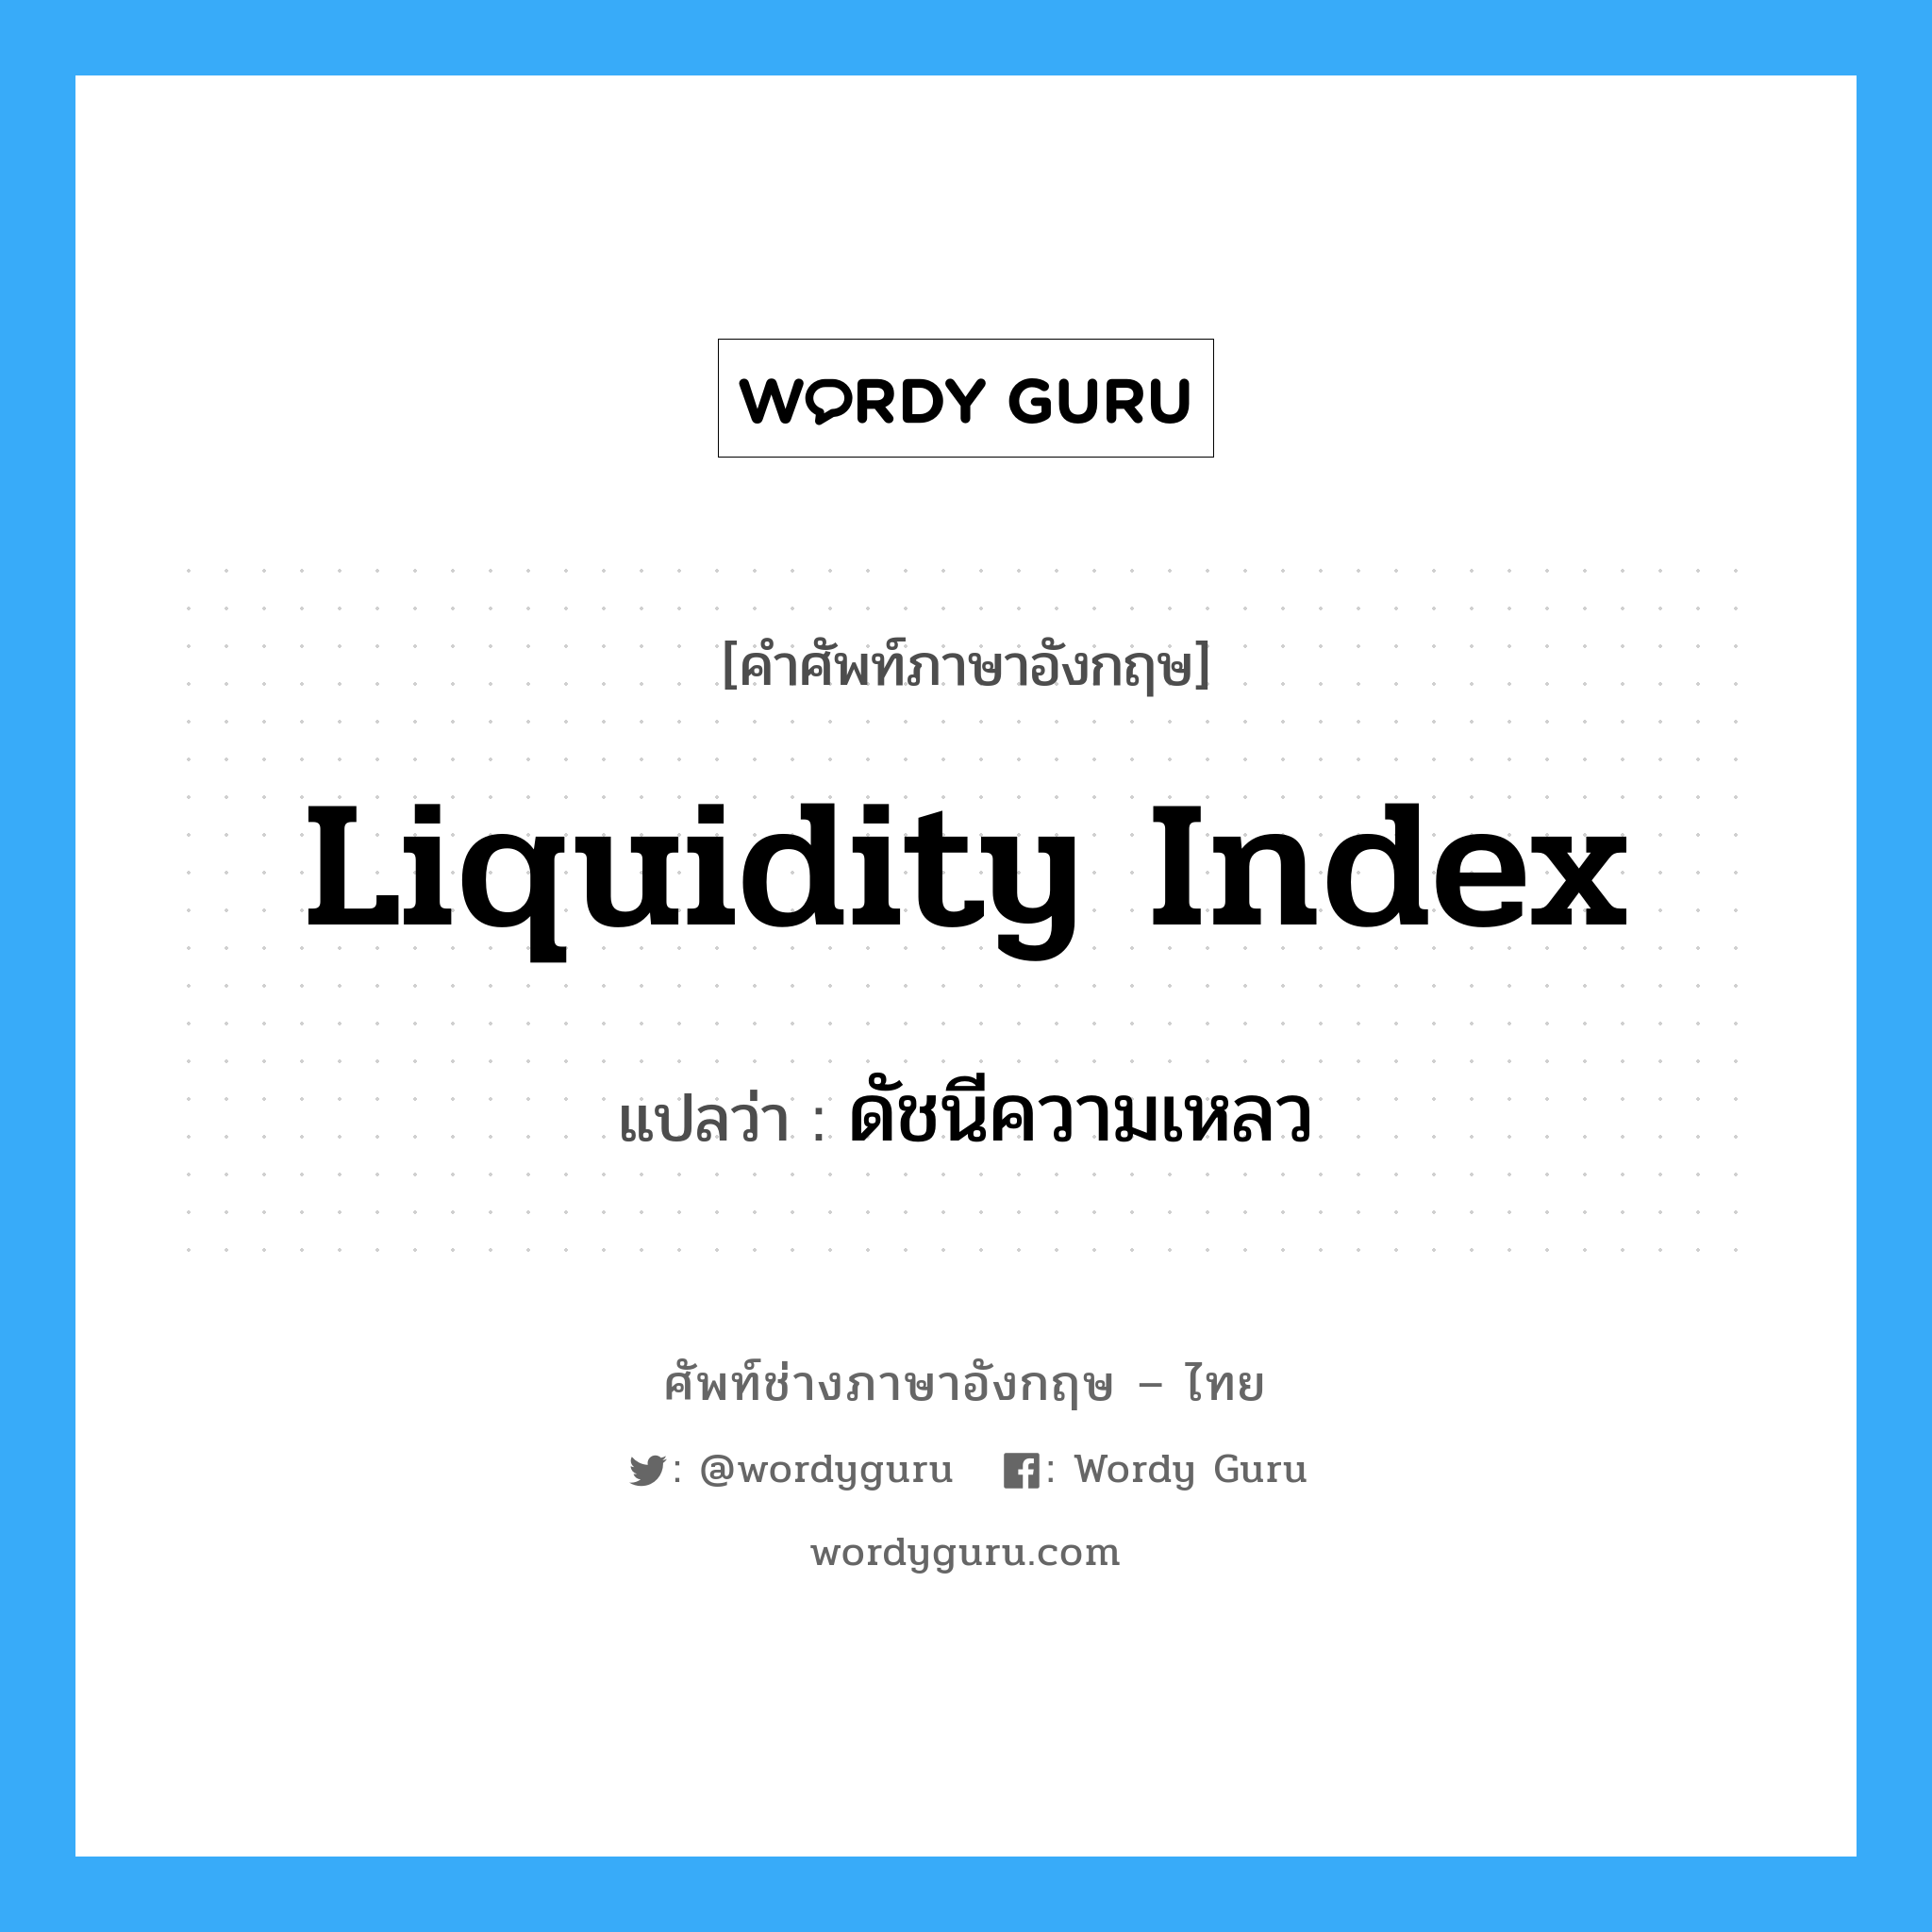 ดัชนีความเหลว ภาษาอังกฤษ?, คำศัพท์ช่างภาษาอังกฤษ - ไทย ดัชนีความเหลว คำศัพท์ภาษาอังกฤษ ดัชนีความเหลว แปลว่า liquidity index